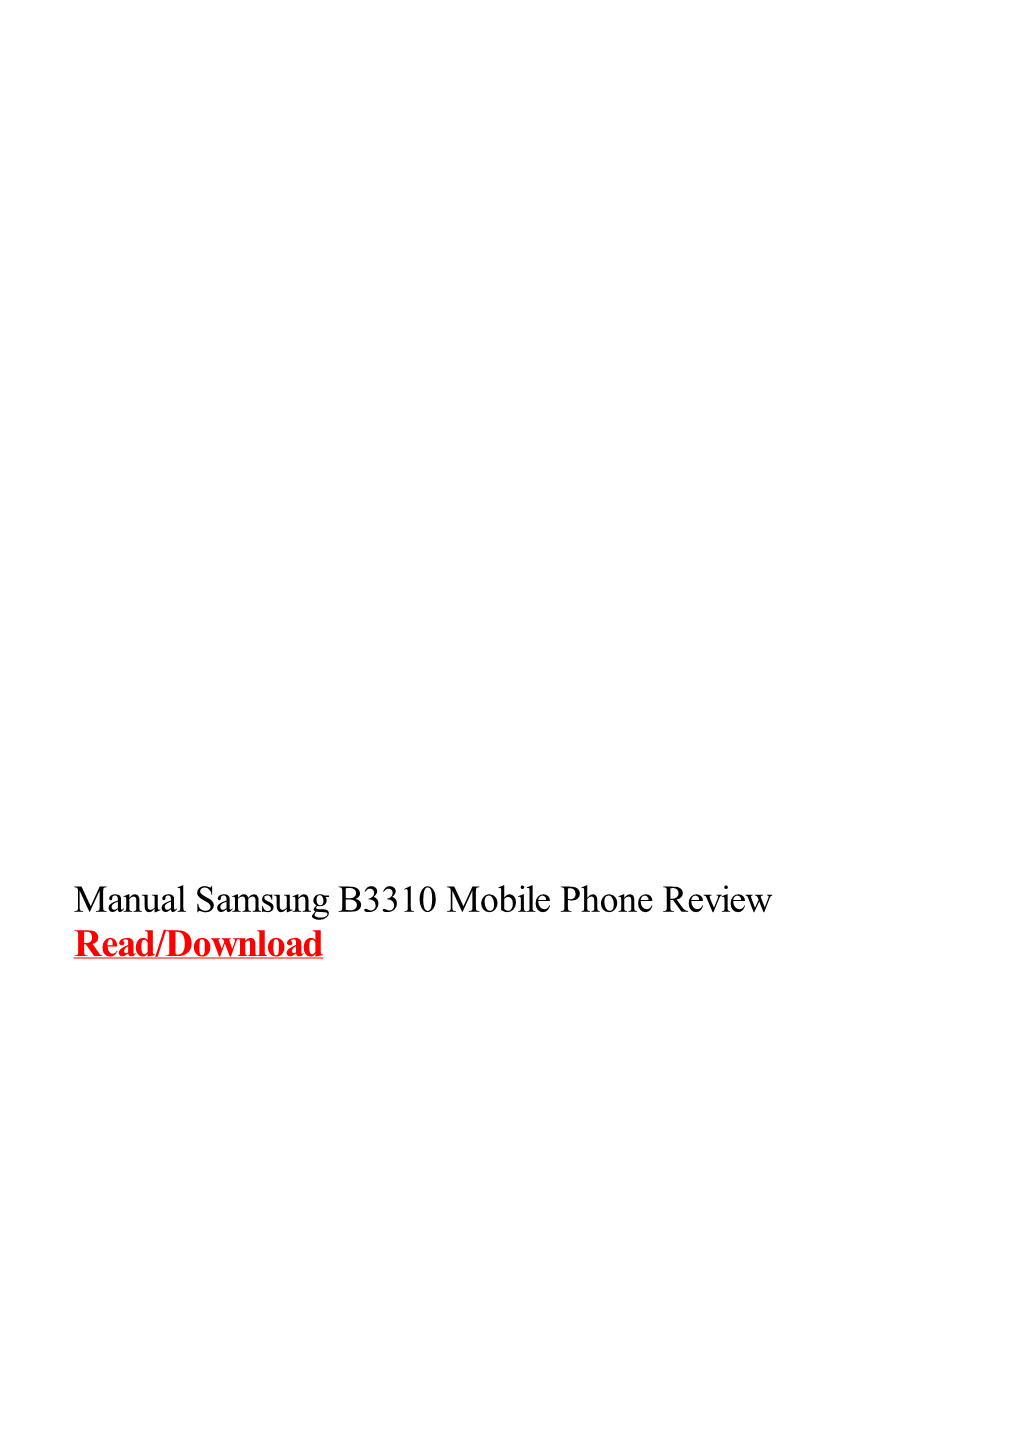 Manual Samsung B3310 Mobile Phone Review